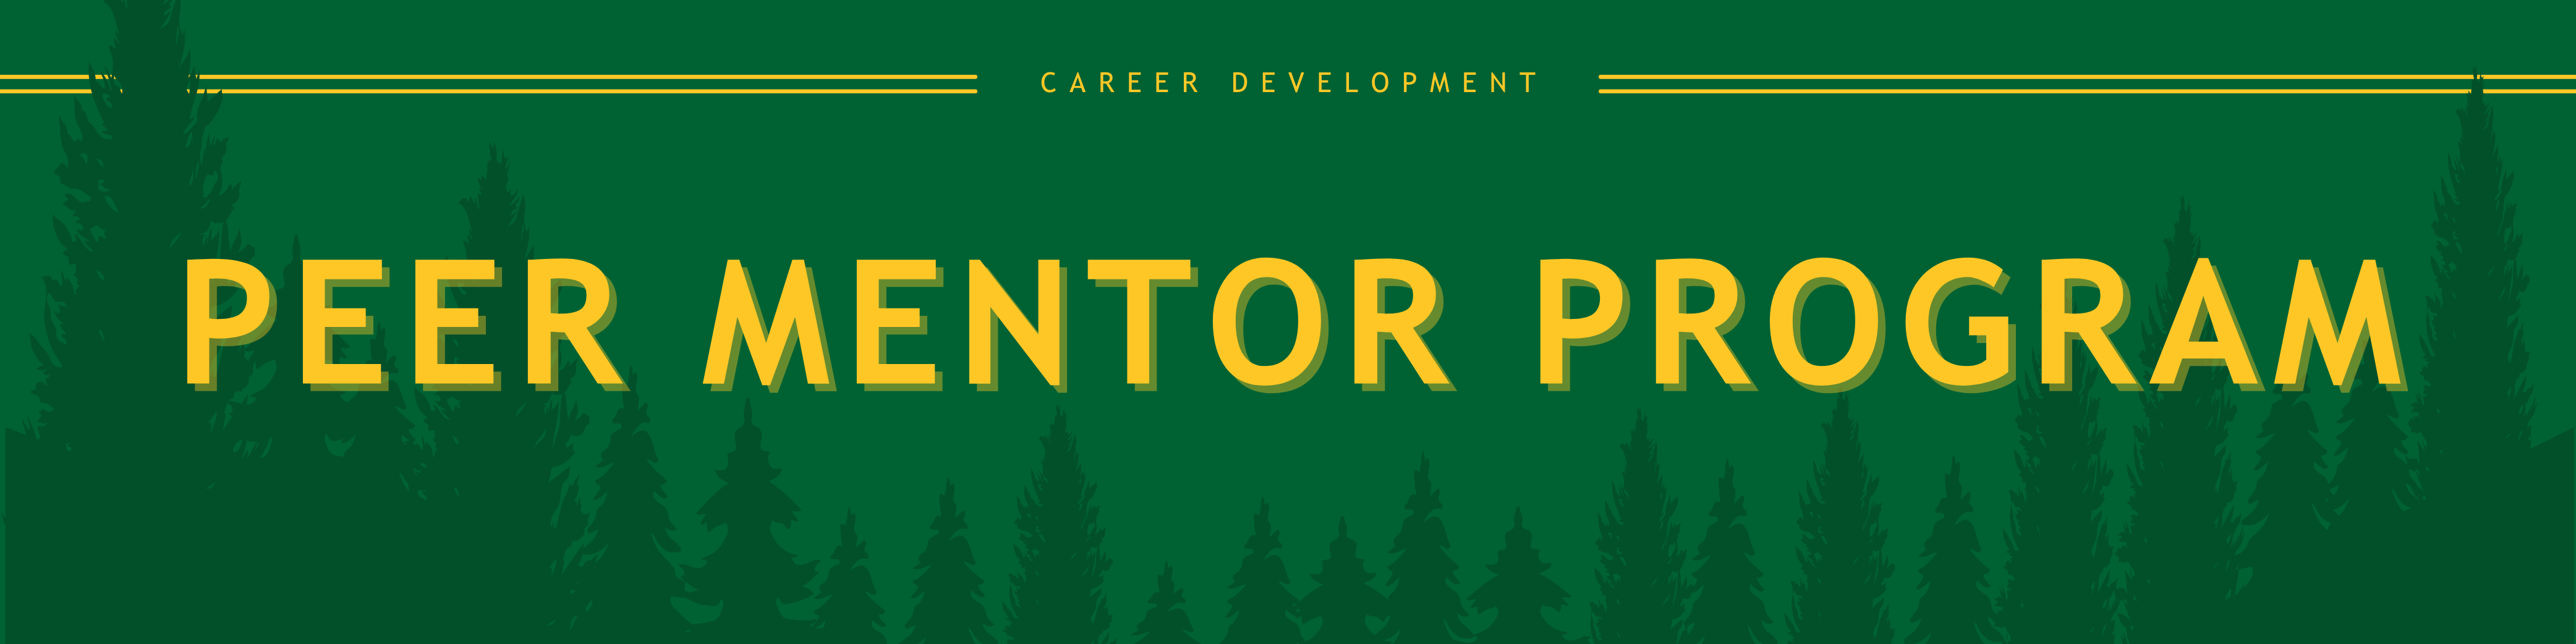 Peer Mentor Program Banner